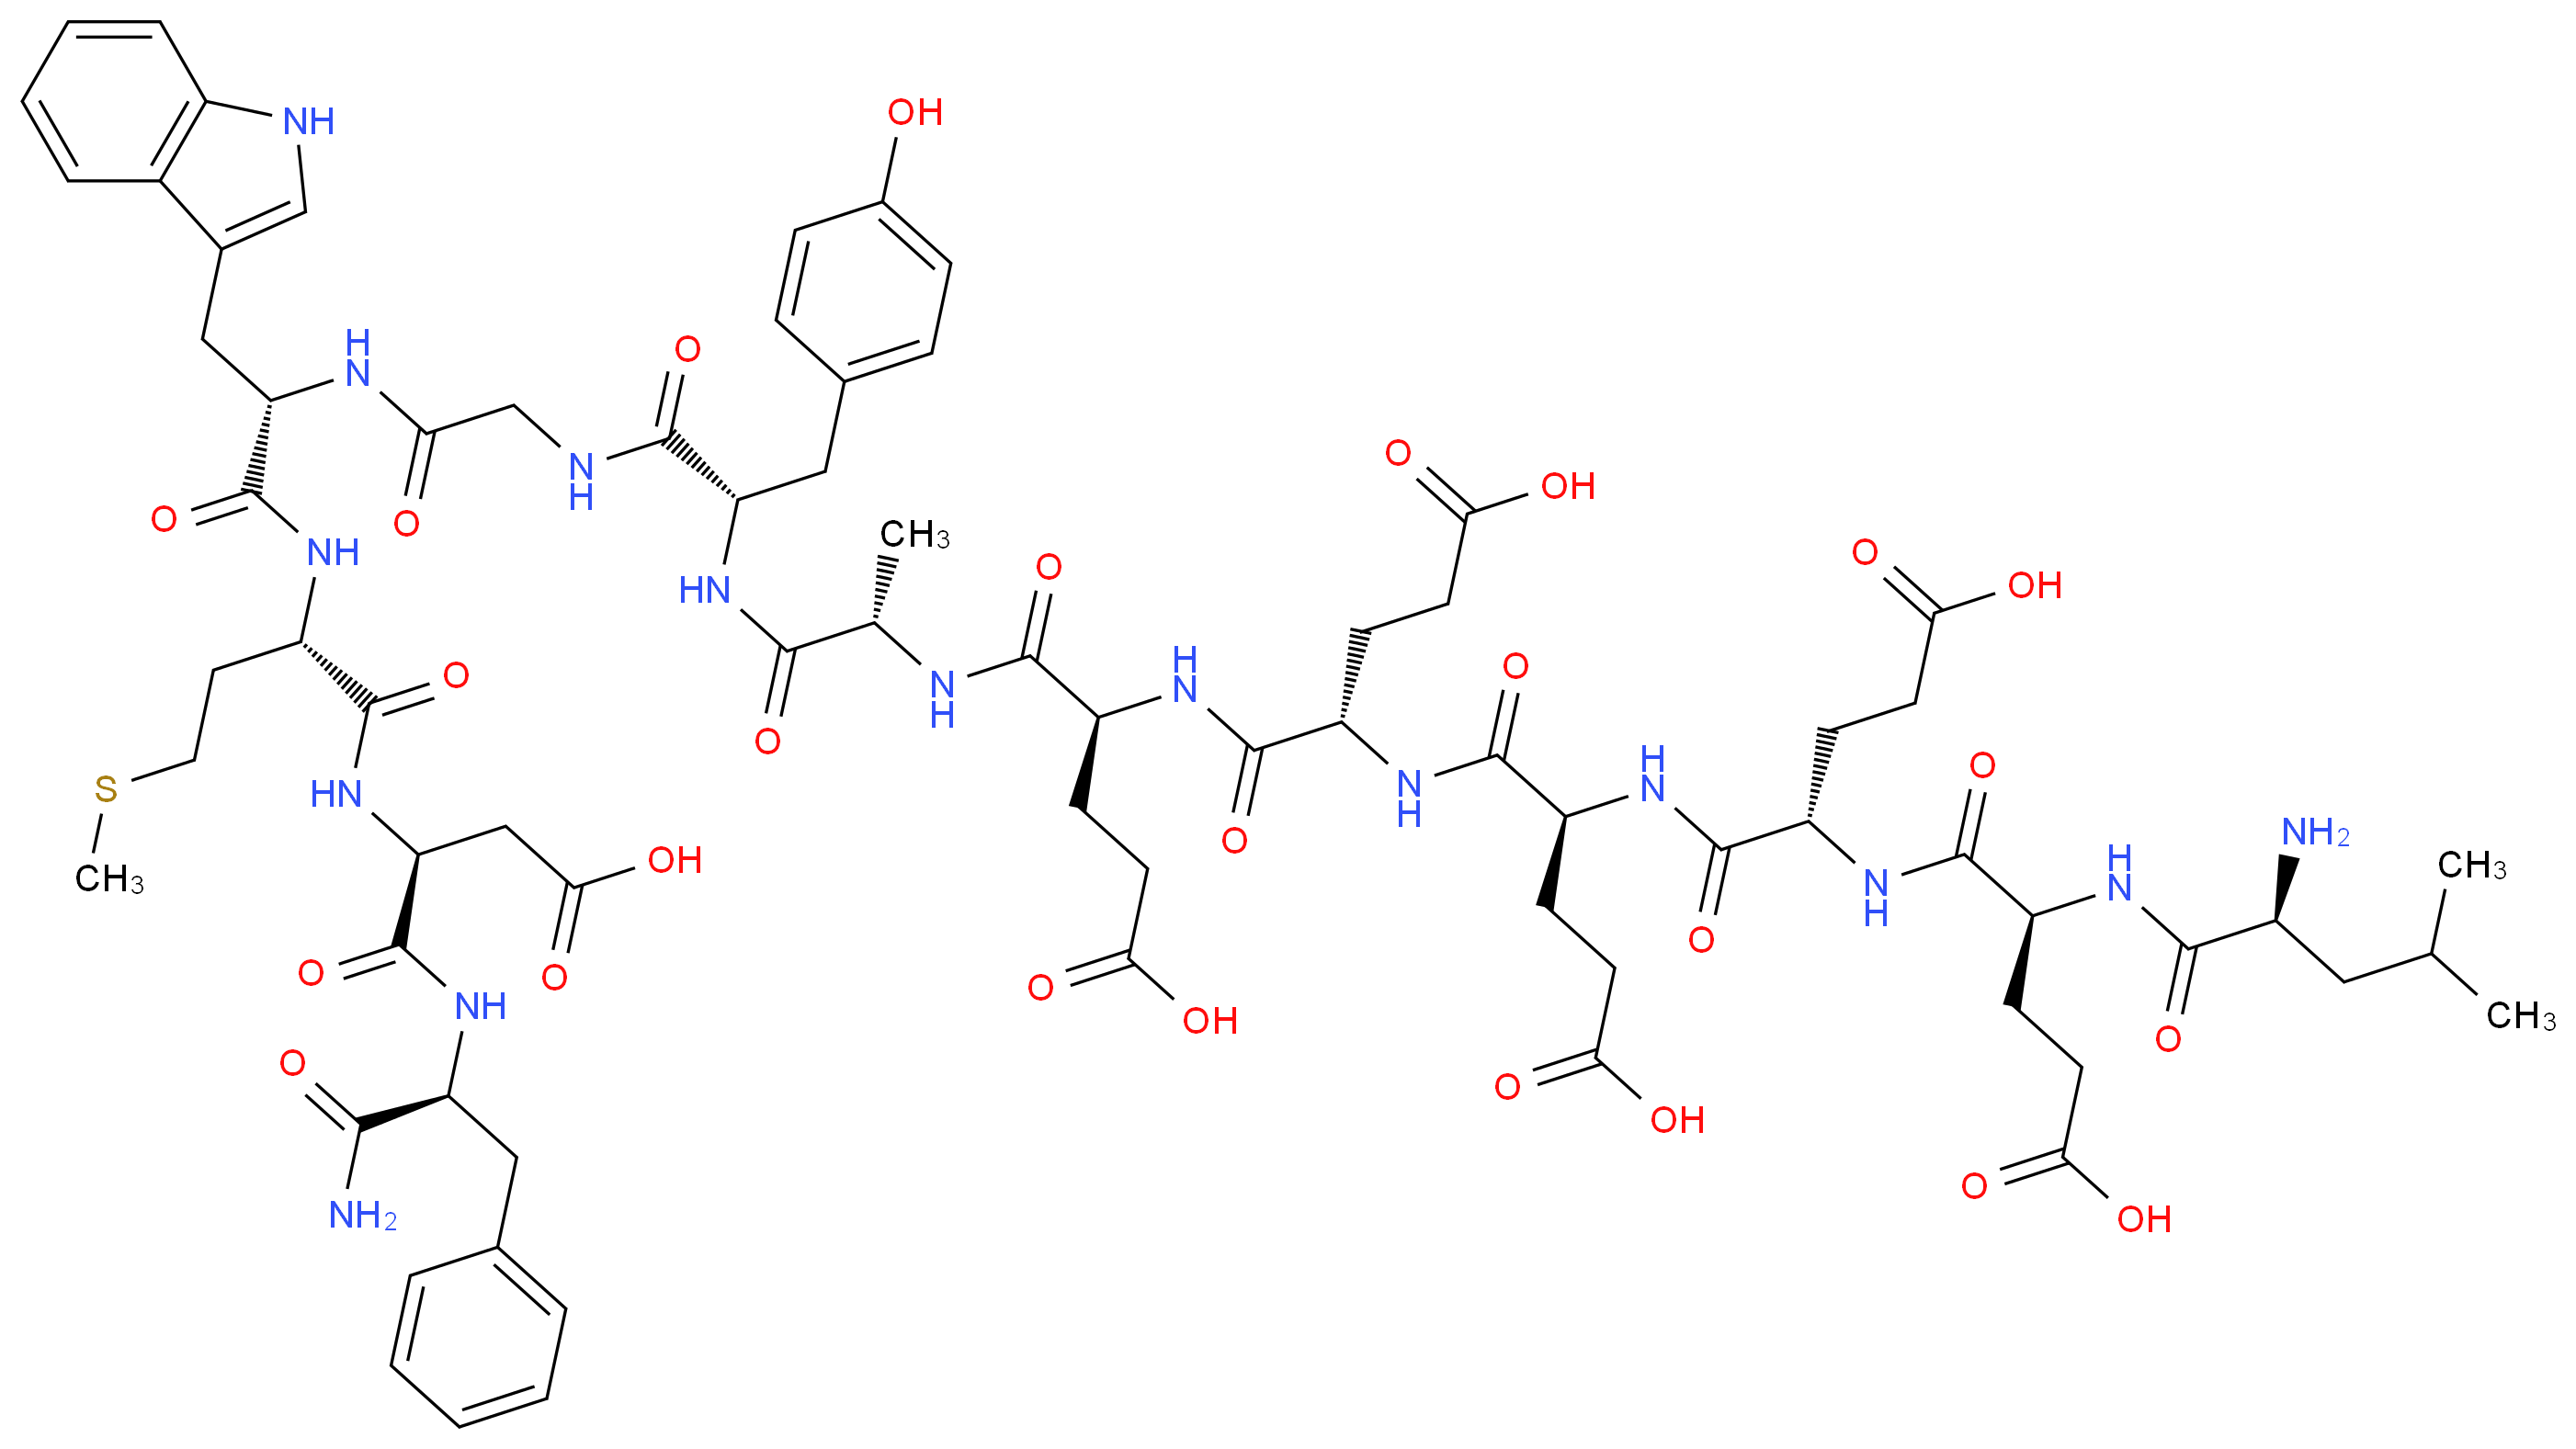 (4S)-4-[(2S)-2-[(2S)-2-[(2S)-2-[(2S)-2-[(2S)-2-amino-4-methylpentanamido]-4-carboxybutanamido]-4-carboxybutanamido]-4-carboxybutanamido]-4-carboxybutanamido]-4-{[(1S)-1-{[(1S)-1-[({[(1S)-1-{[(1S)-1-{[(1S)-1-{[(1S)-1-carbamoyl-2-phenylethyl]carbamoyl}-2-carboxyethyl]carbamoyl}-3-(methylsulfanyl)propyl]carbamoyl}-2-(1H-indol-3-yl)ethyl]carbamoyl}methyl)carbamoyl]-2-(4-hydroxyphenyl)ethyl]carbamoyl}ethyl]carbamoyl}butanoic acid_分子结构_CAS_60748-07-4